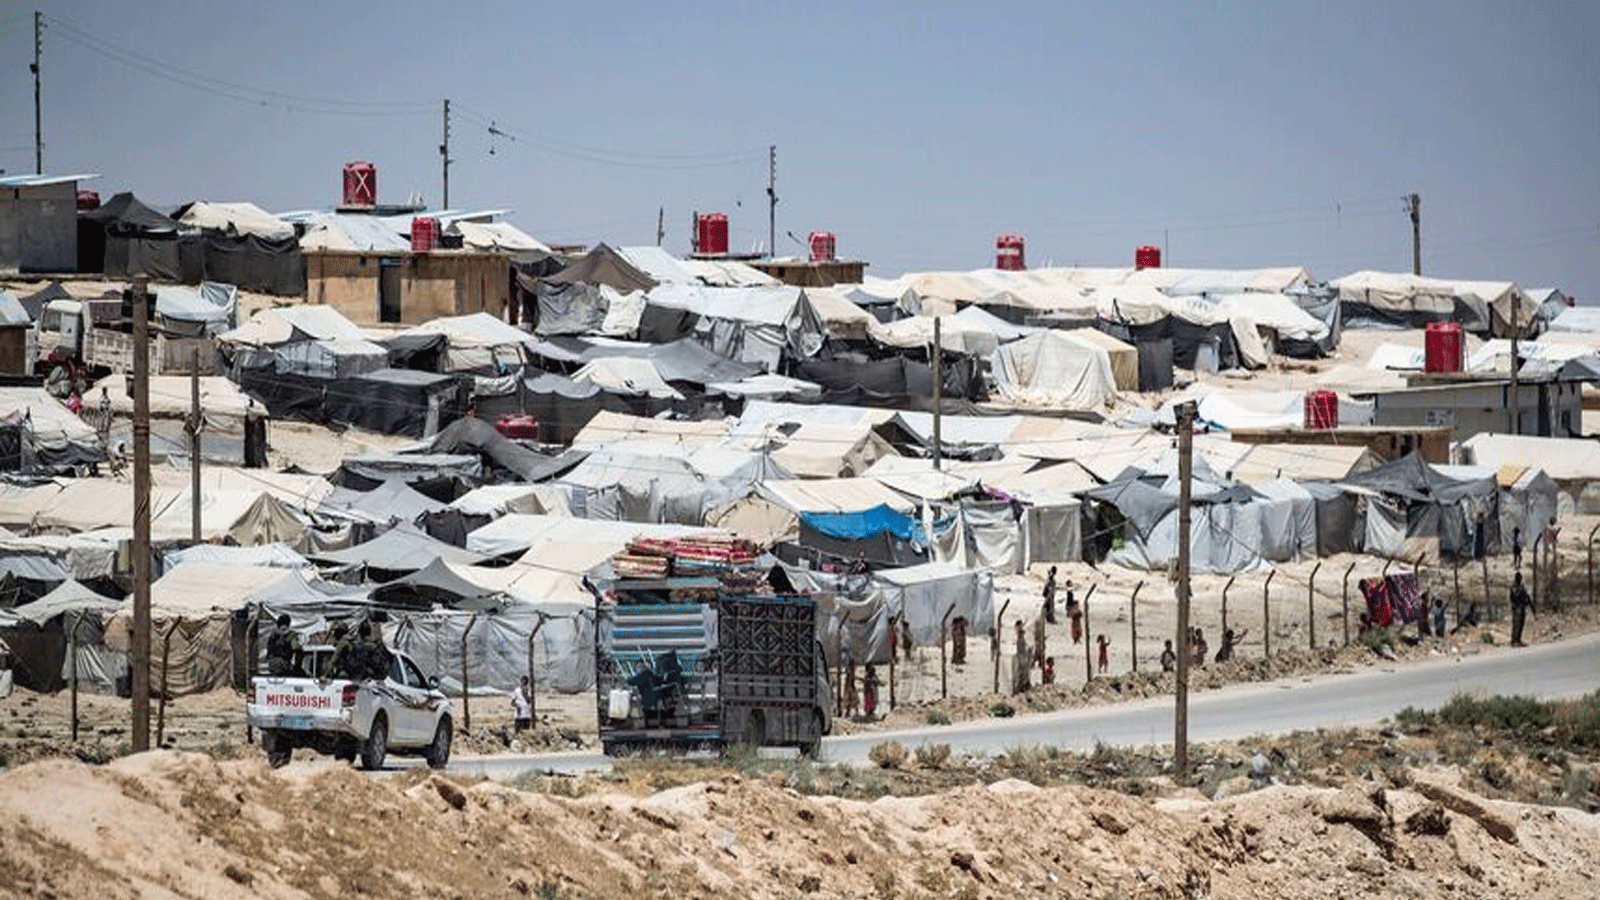 منظر عام يُظهر مخيم الهول الذي يديره الأكراد، والذي يحتجز أقارب مقاتلين مشتبهين في تنظيم الدولة الإسلامية، في شمال شرق محافظة الحسكة السورية